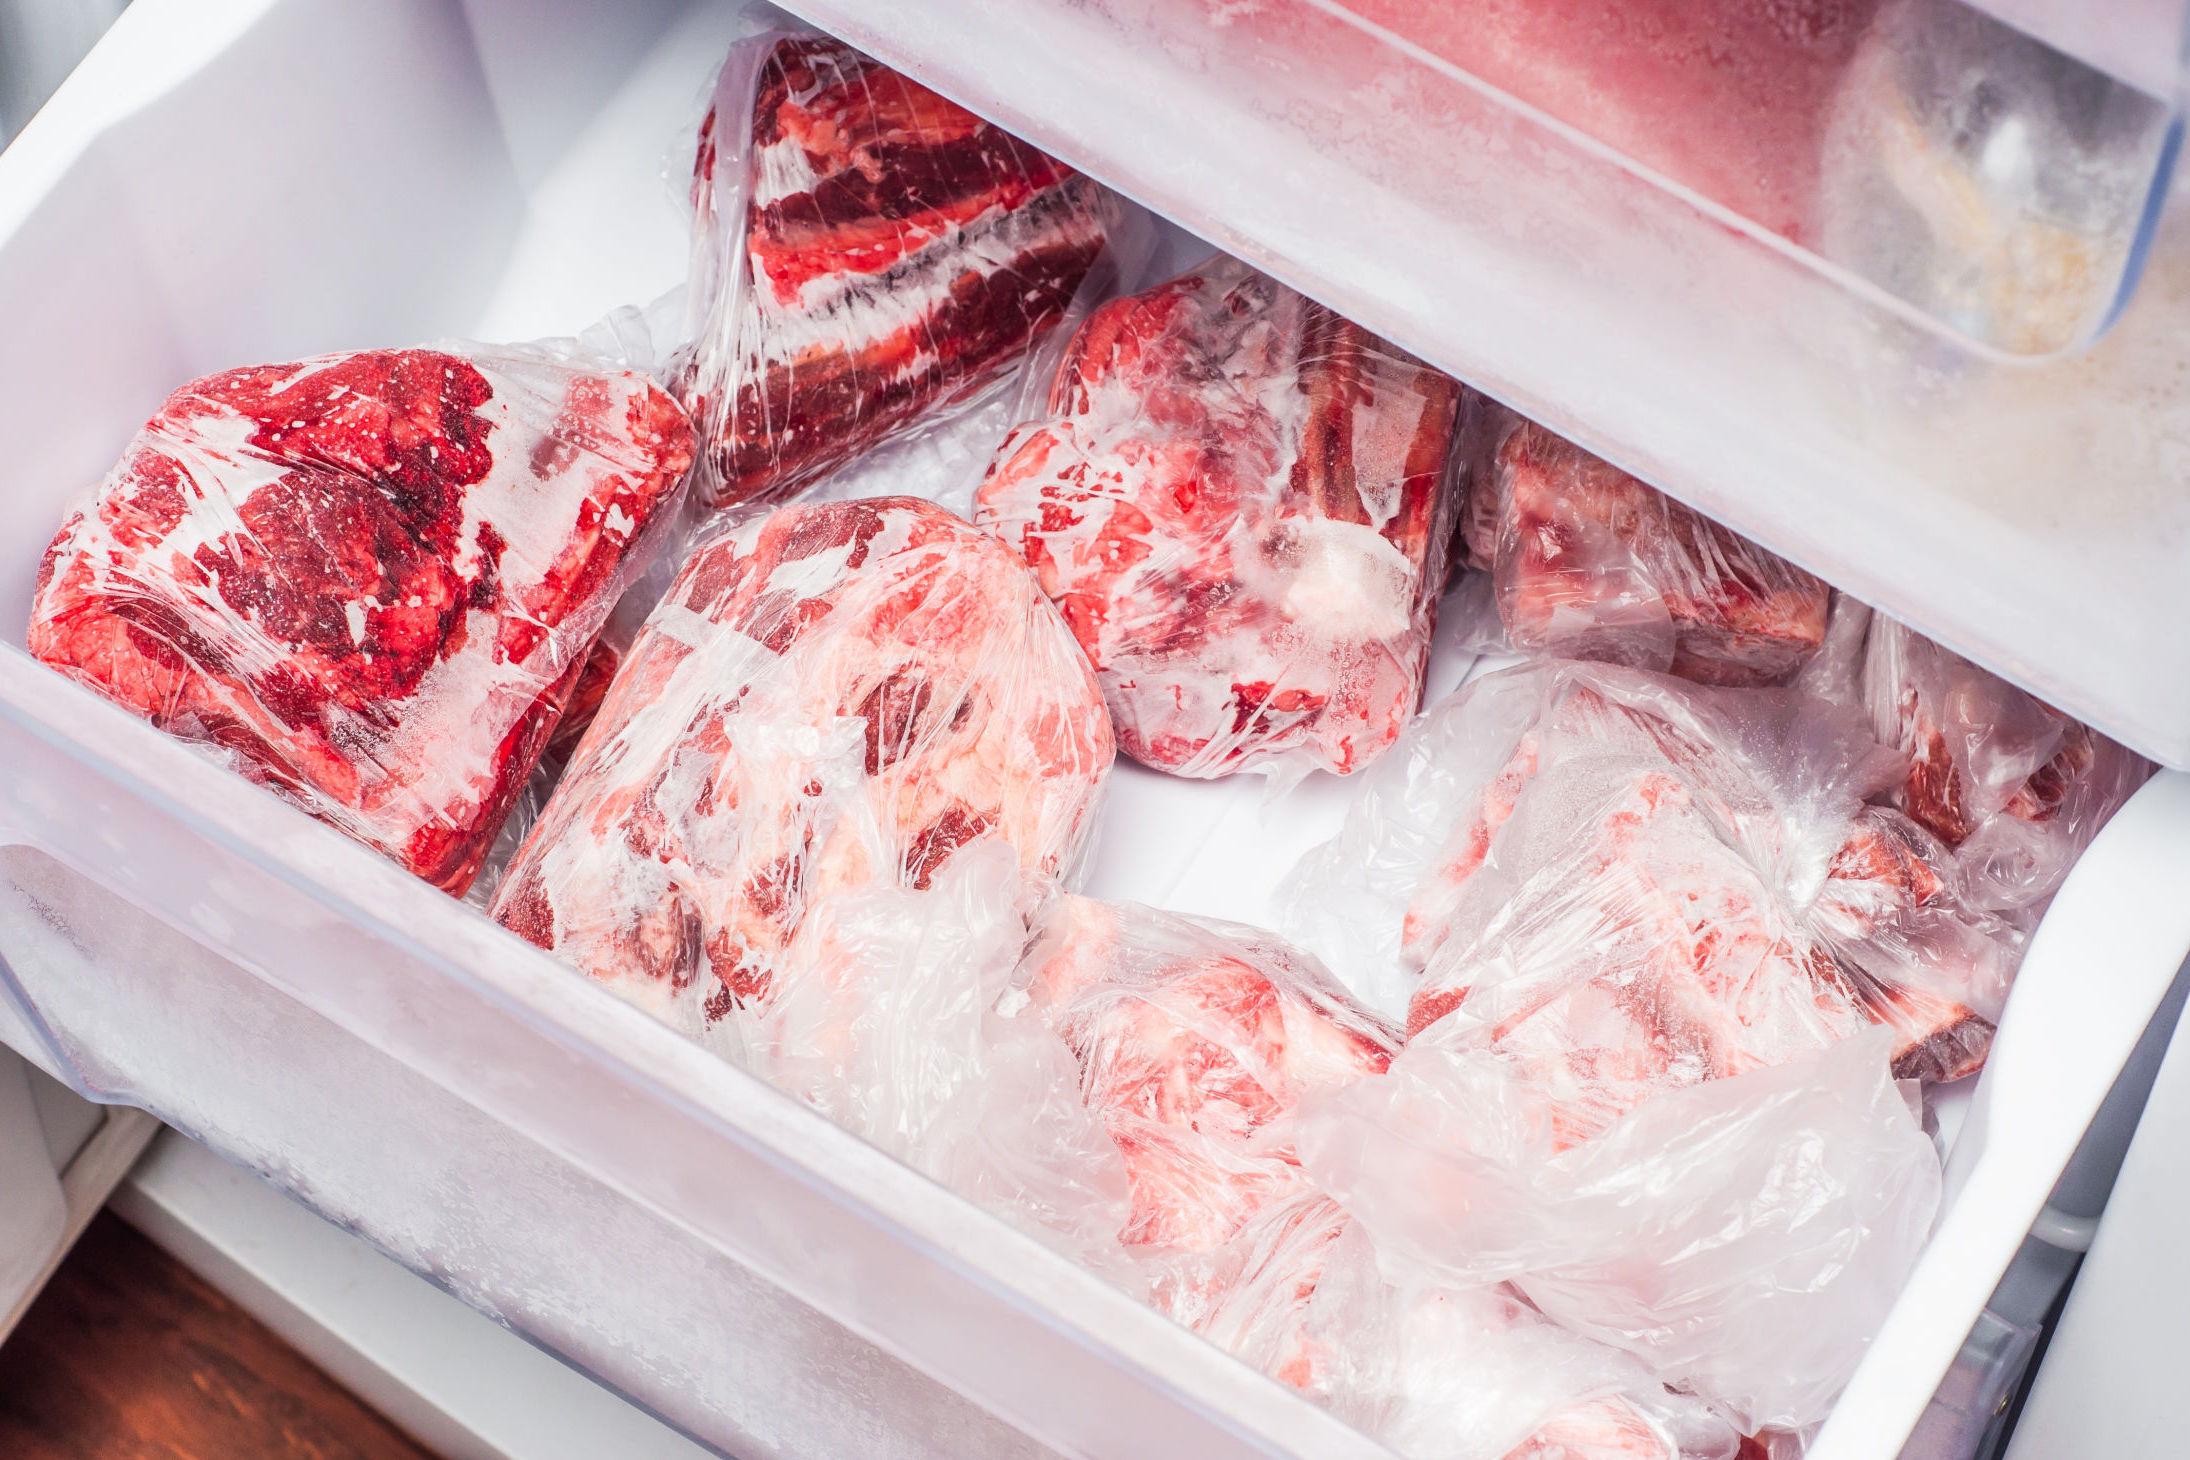 RIKTIG EMBALLERING: Pakk kjøttet godt inn og press ut mest mulig luft før nedfrysing. Foto: Shutterstock / NTB scanpix